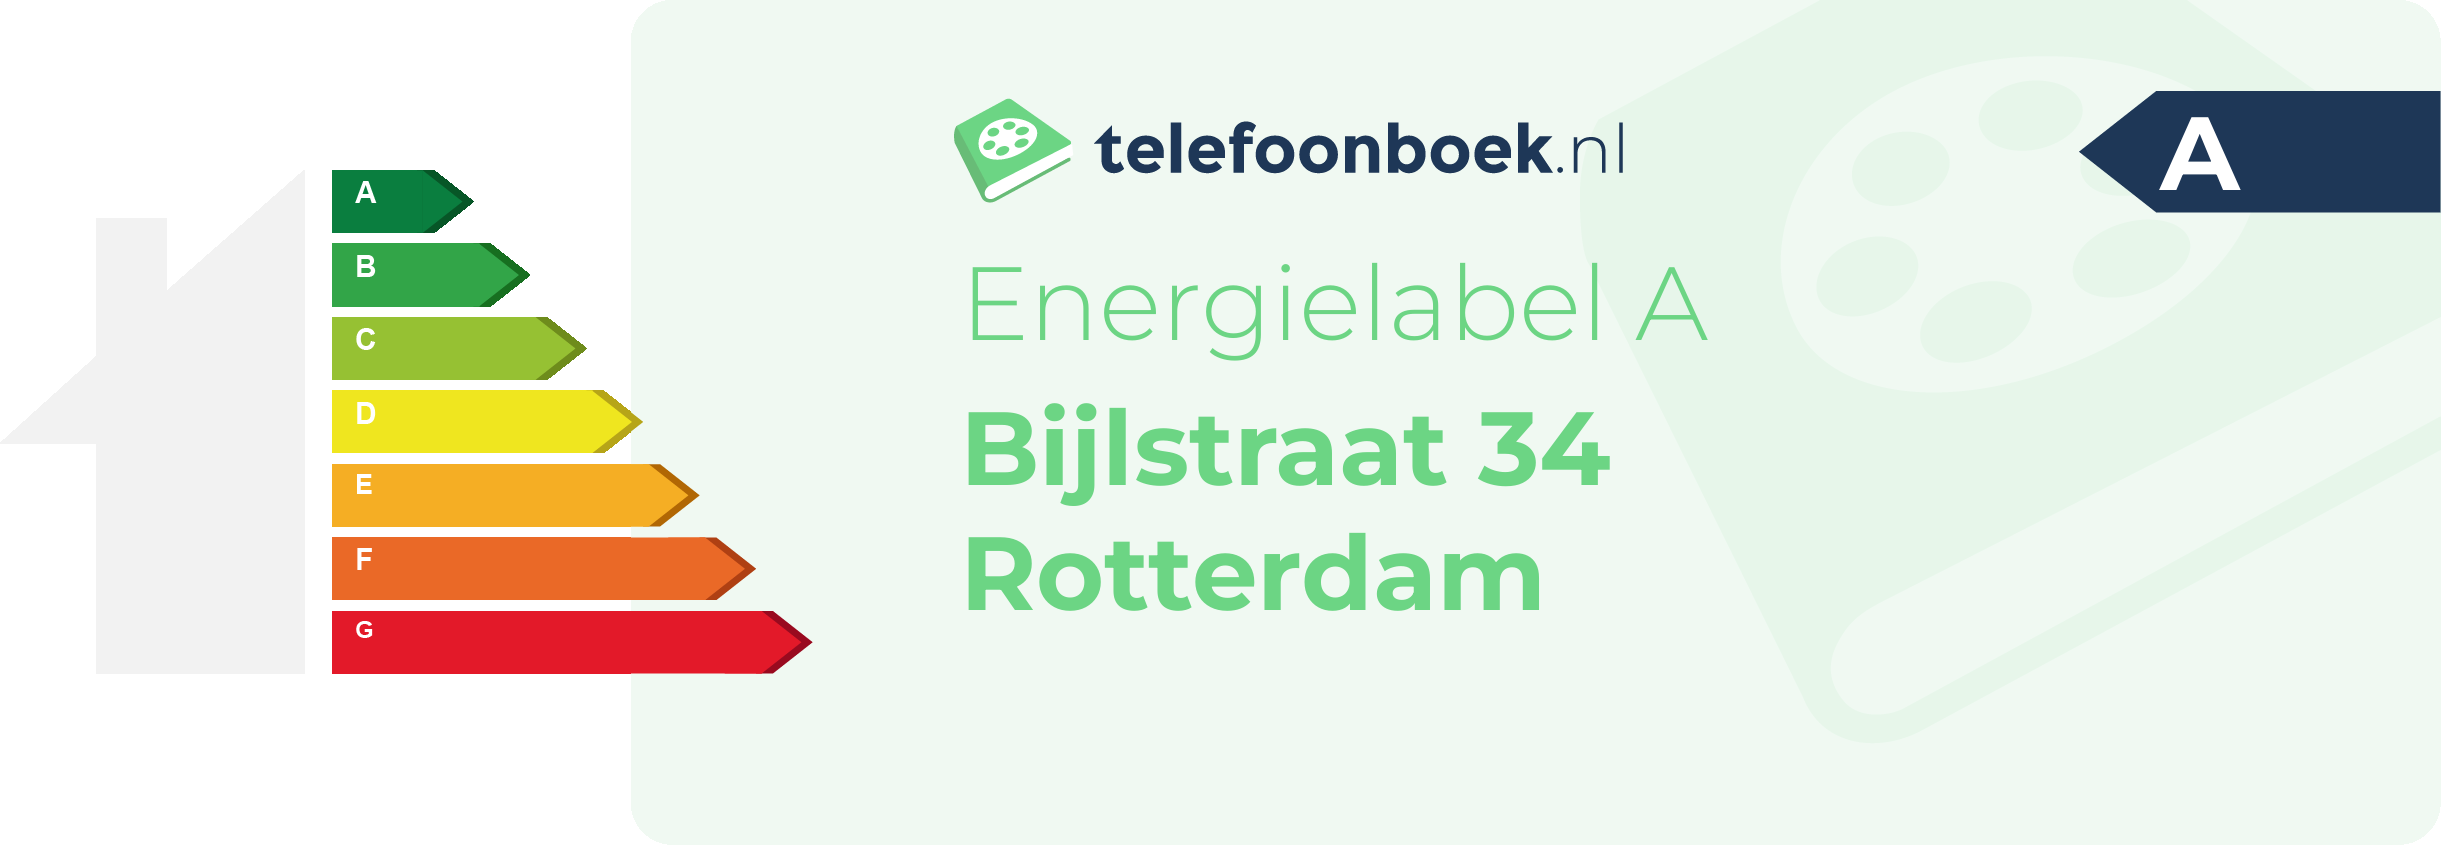 Energielabel Bijlstraat 34 Rotterdam